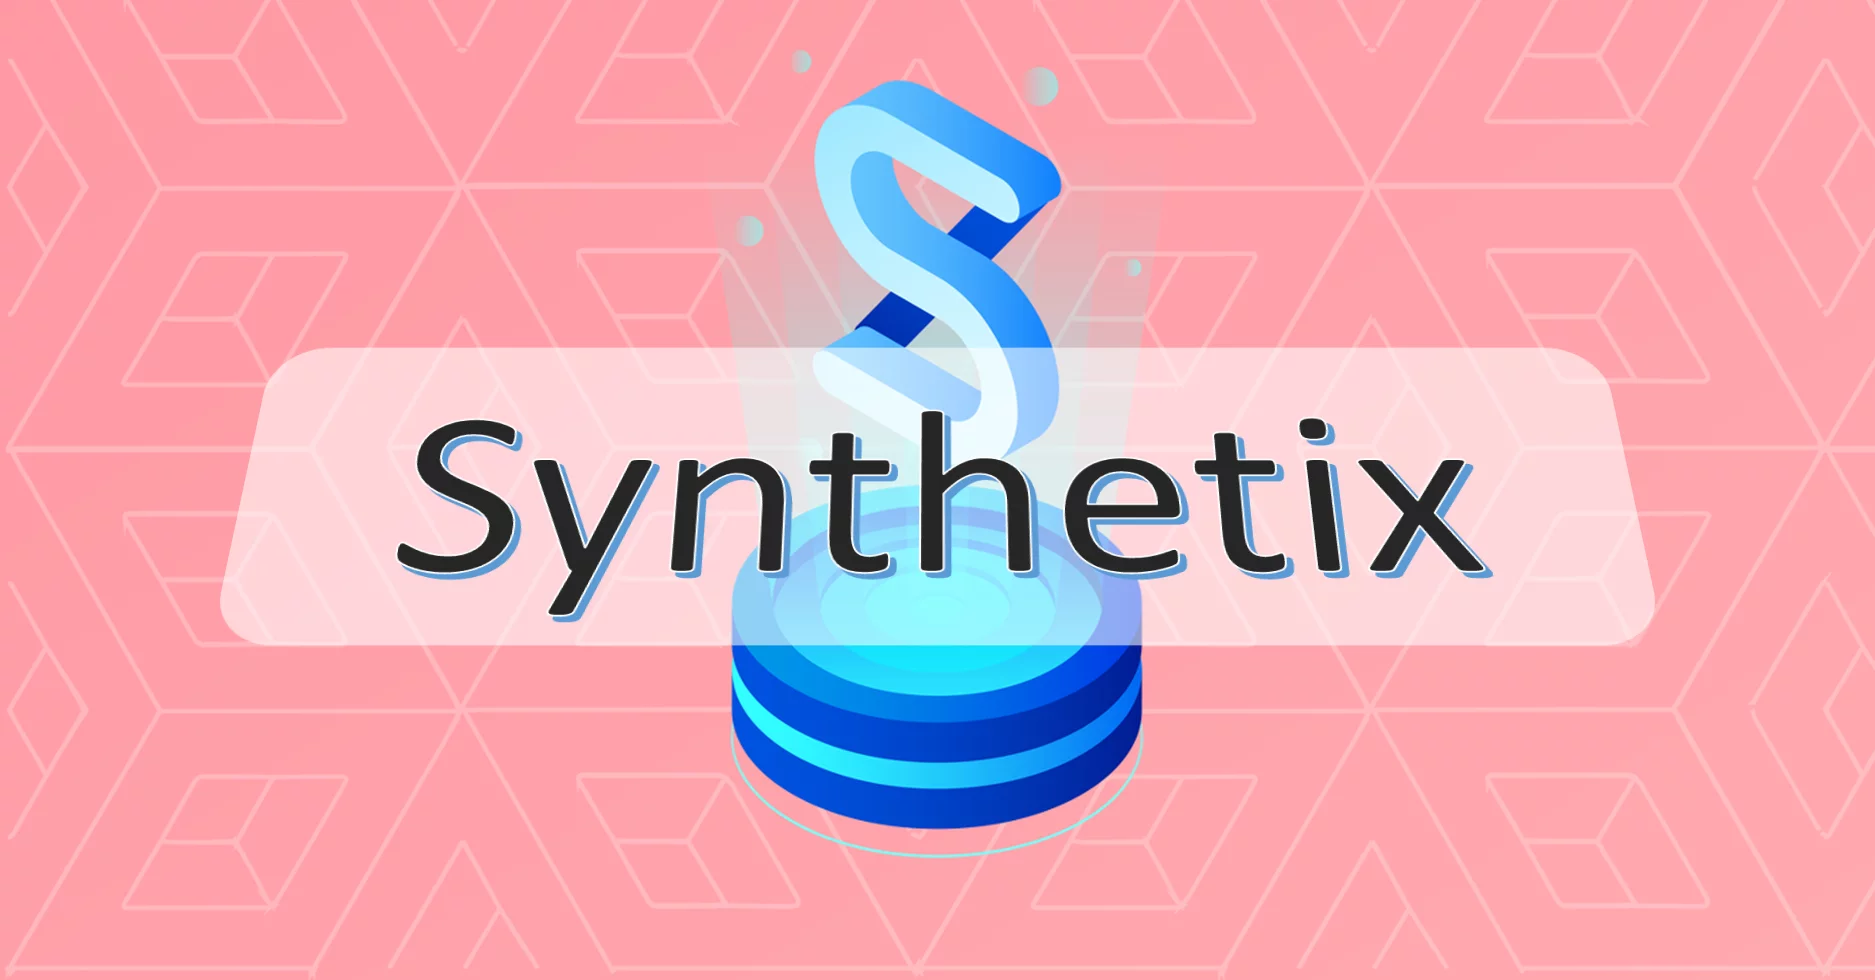 synthetix là gì